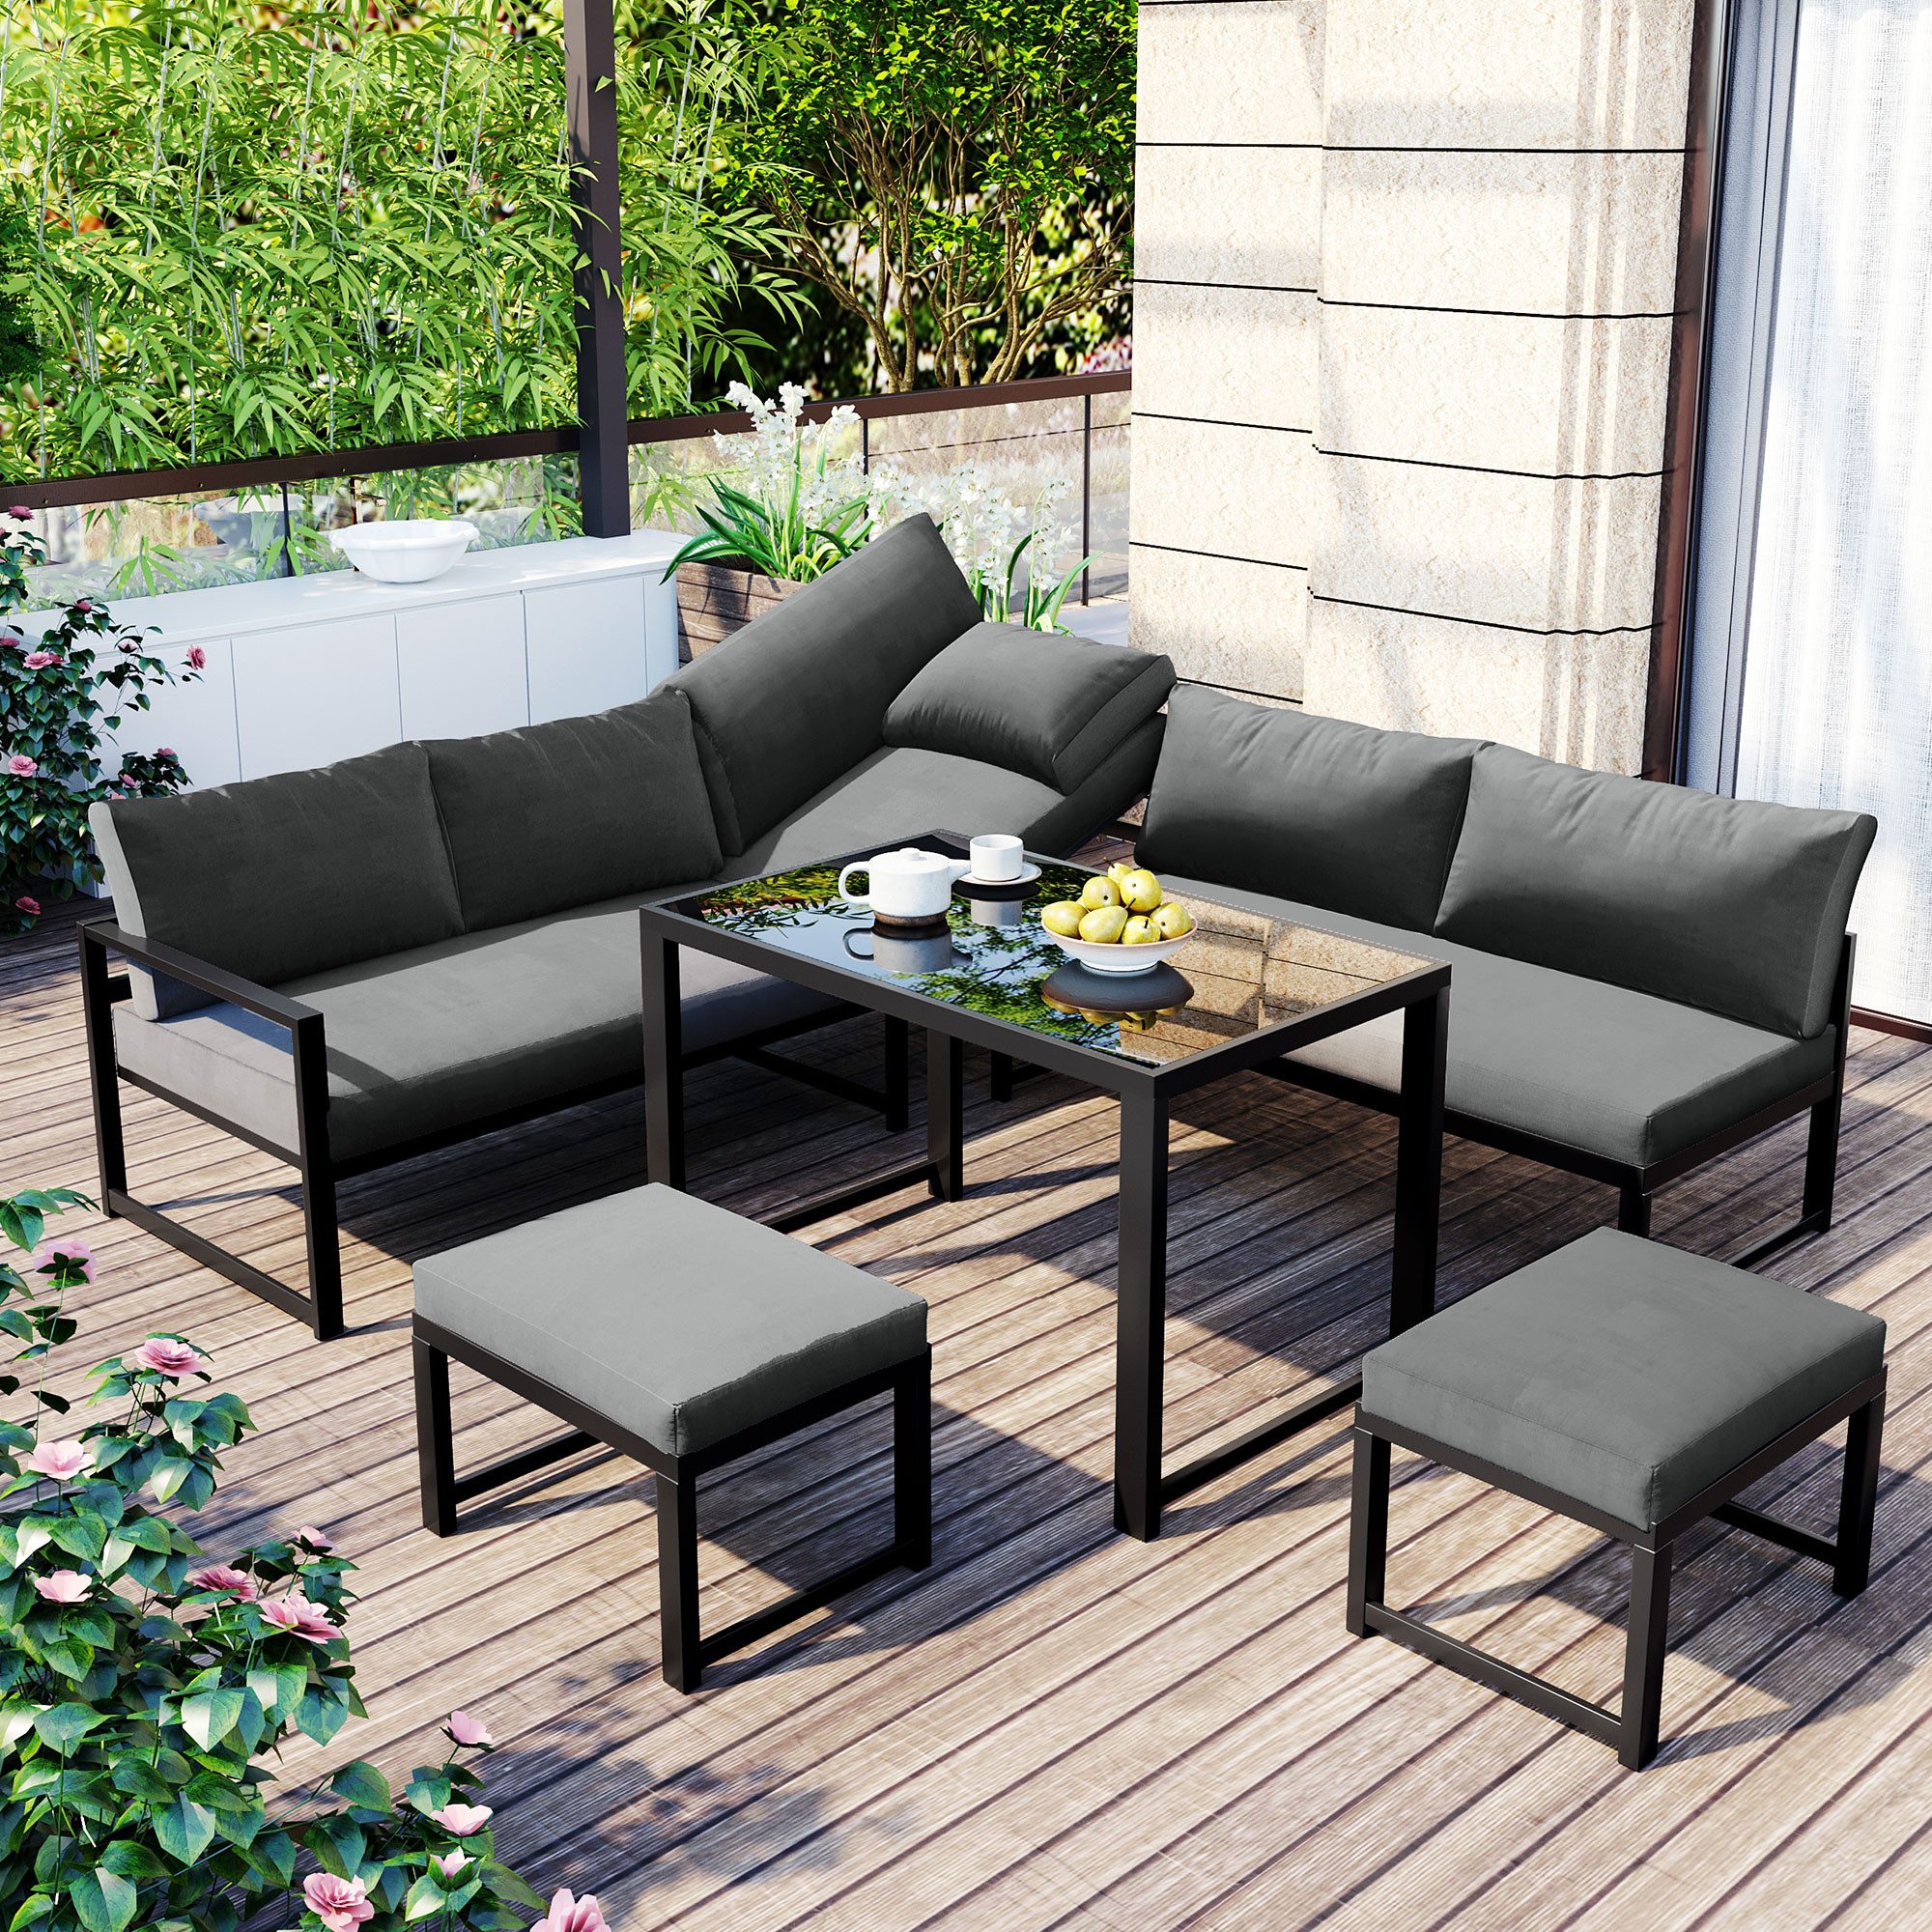 EXTSUD Gartenlounge-Set Aluminium Sitzgruppe für Garten Balkon mit Liegefunktion,Grau